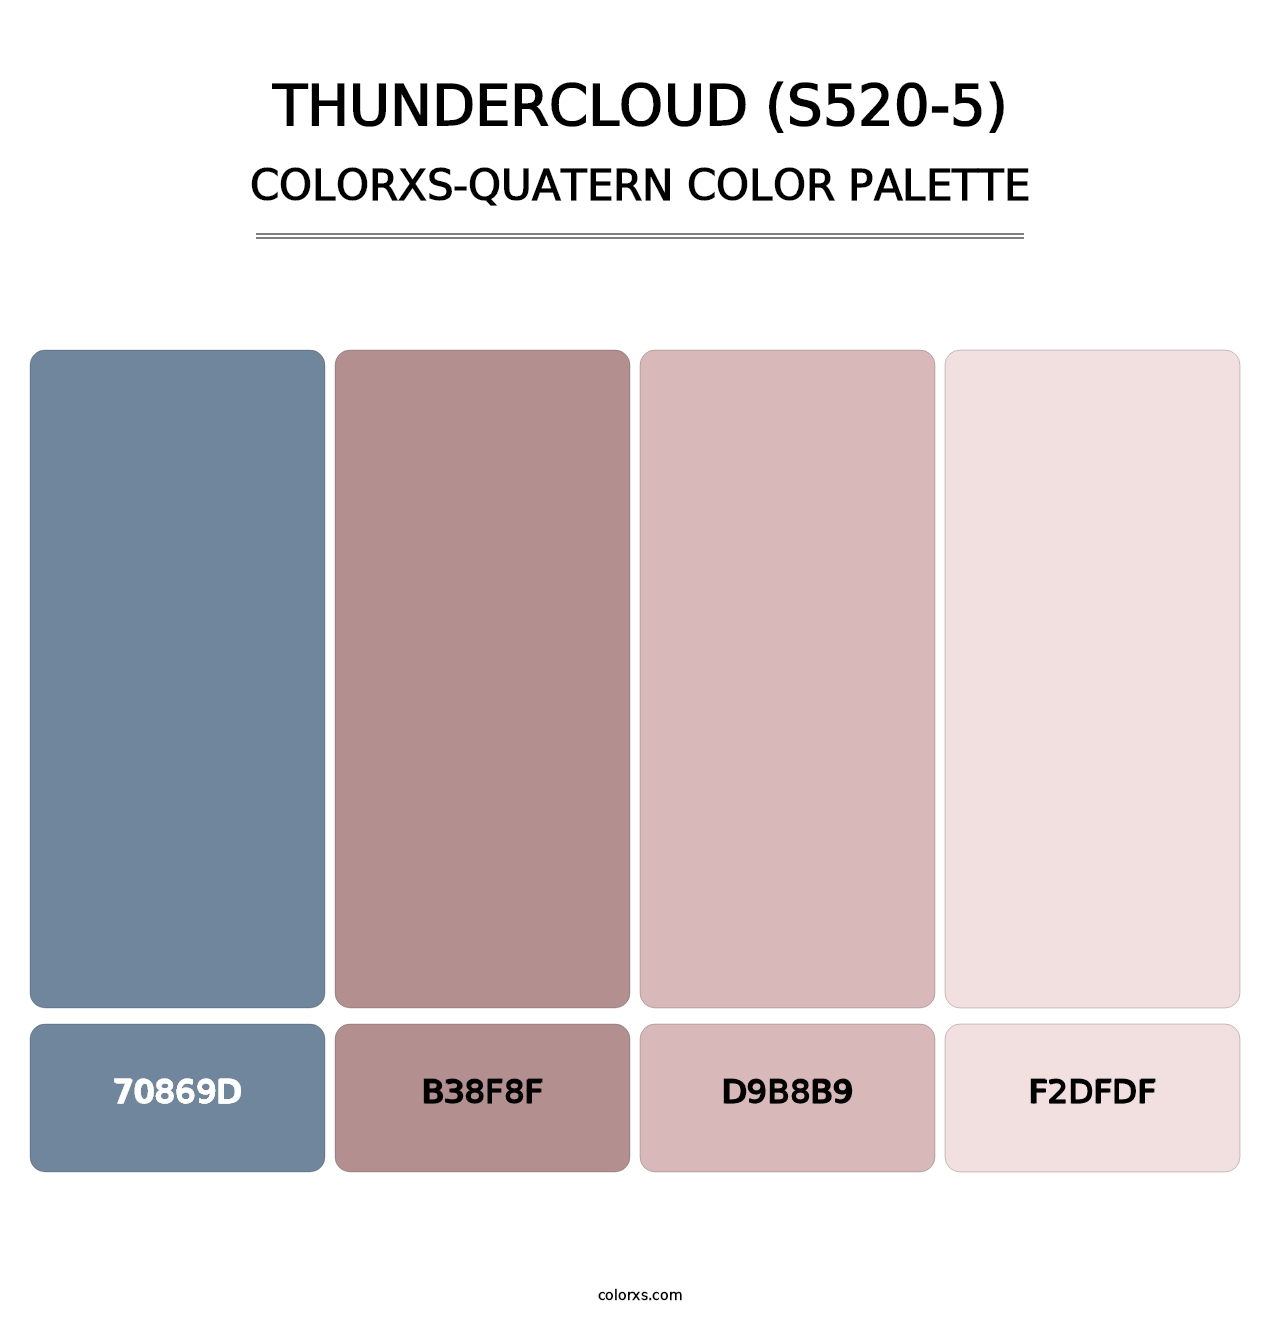 Thundercloud (S520-5) - Colorxs Quatern Palette